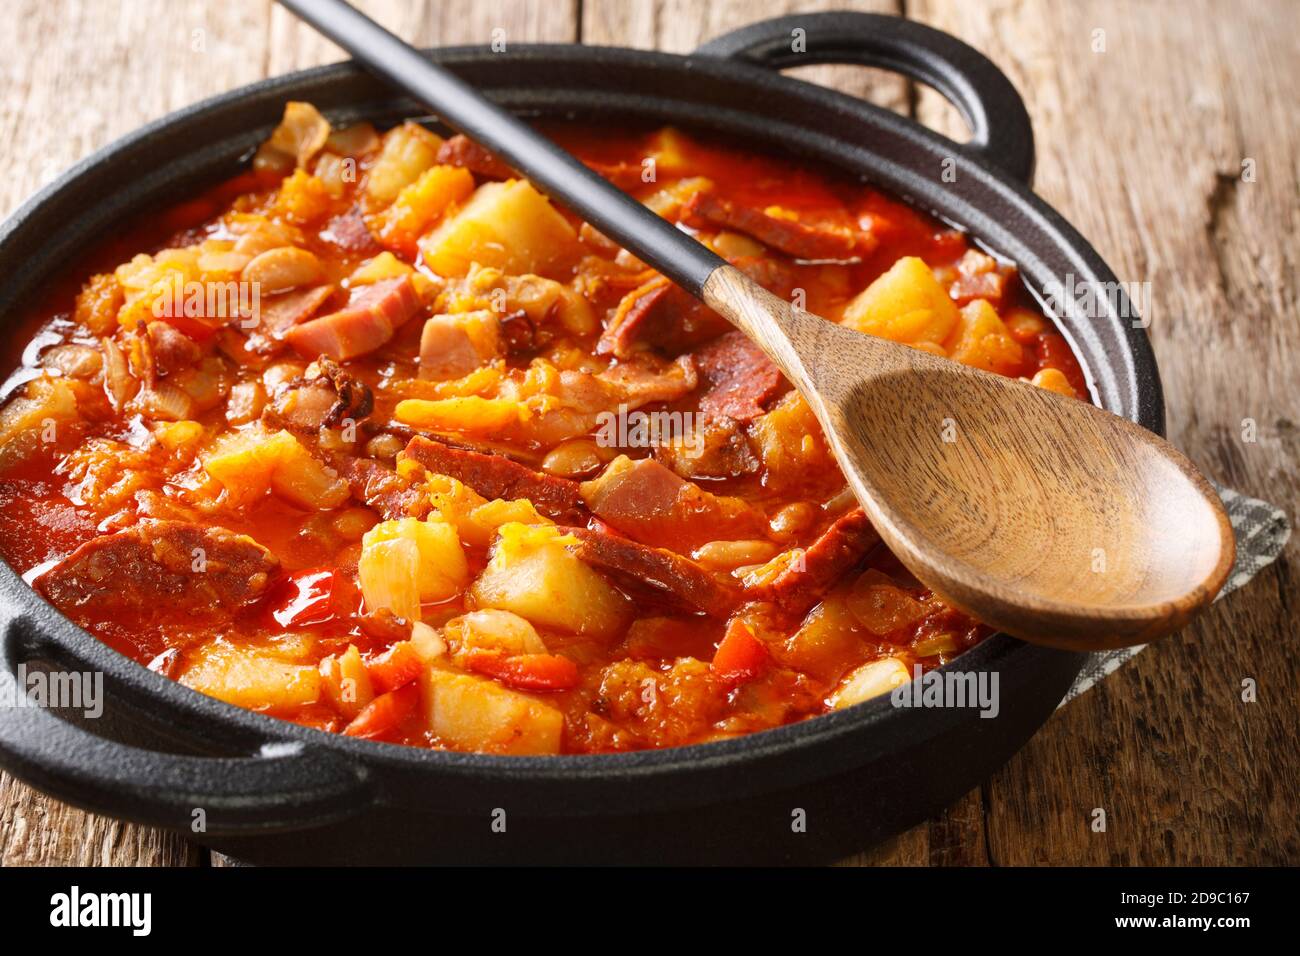 Epicé lentement cuit Locroco à base de légumes, saucisses et viande dans un pot sur la table. Horizontal Banque D'Images